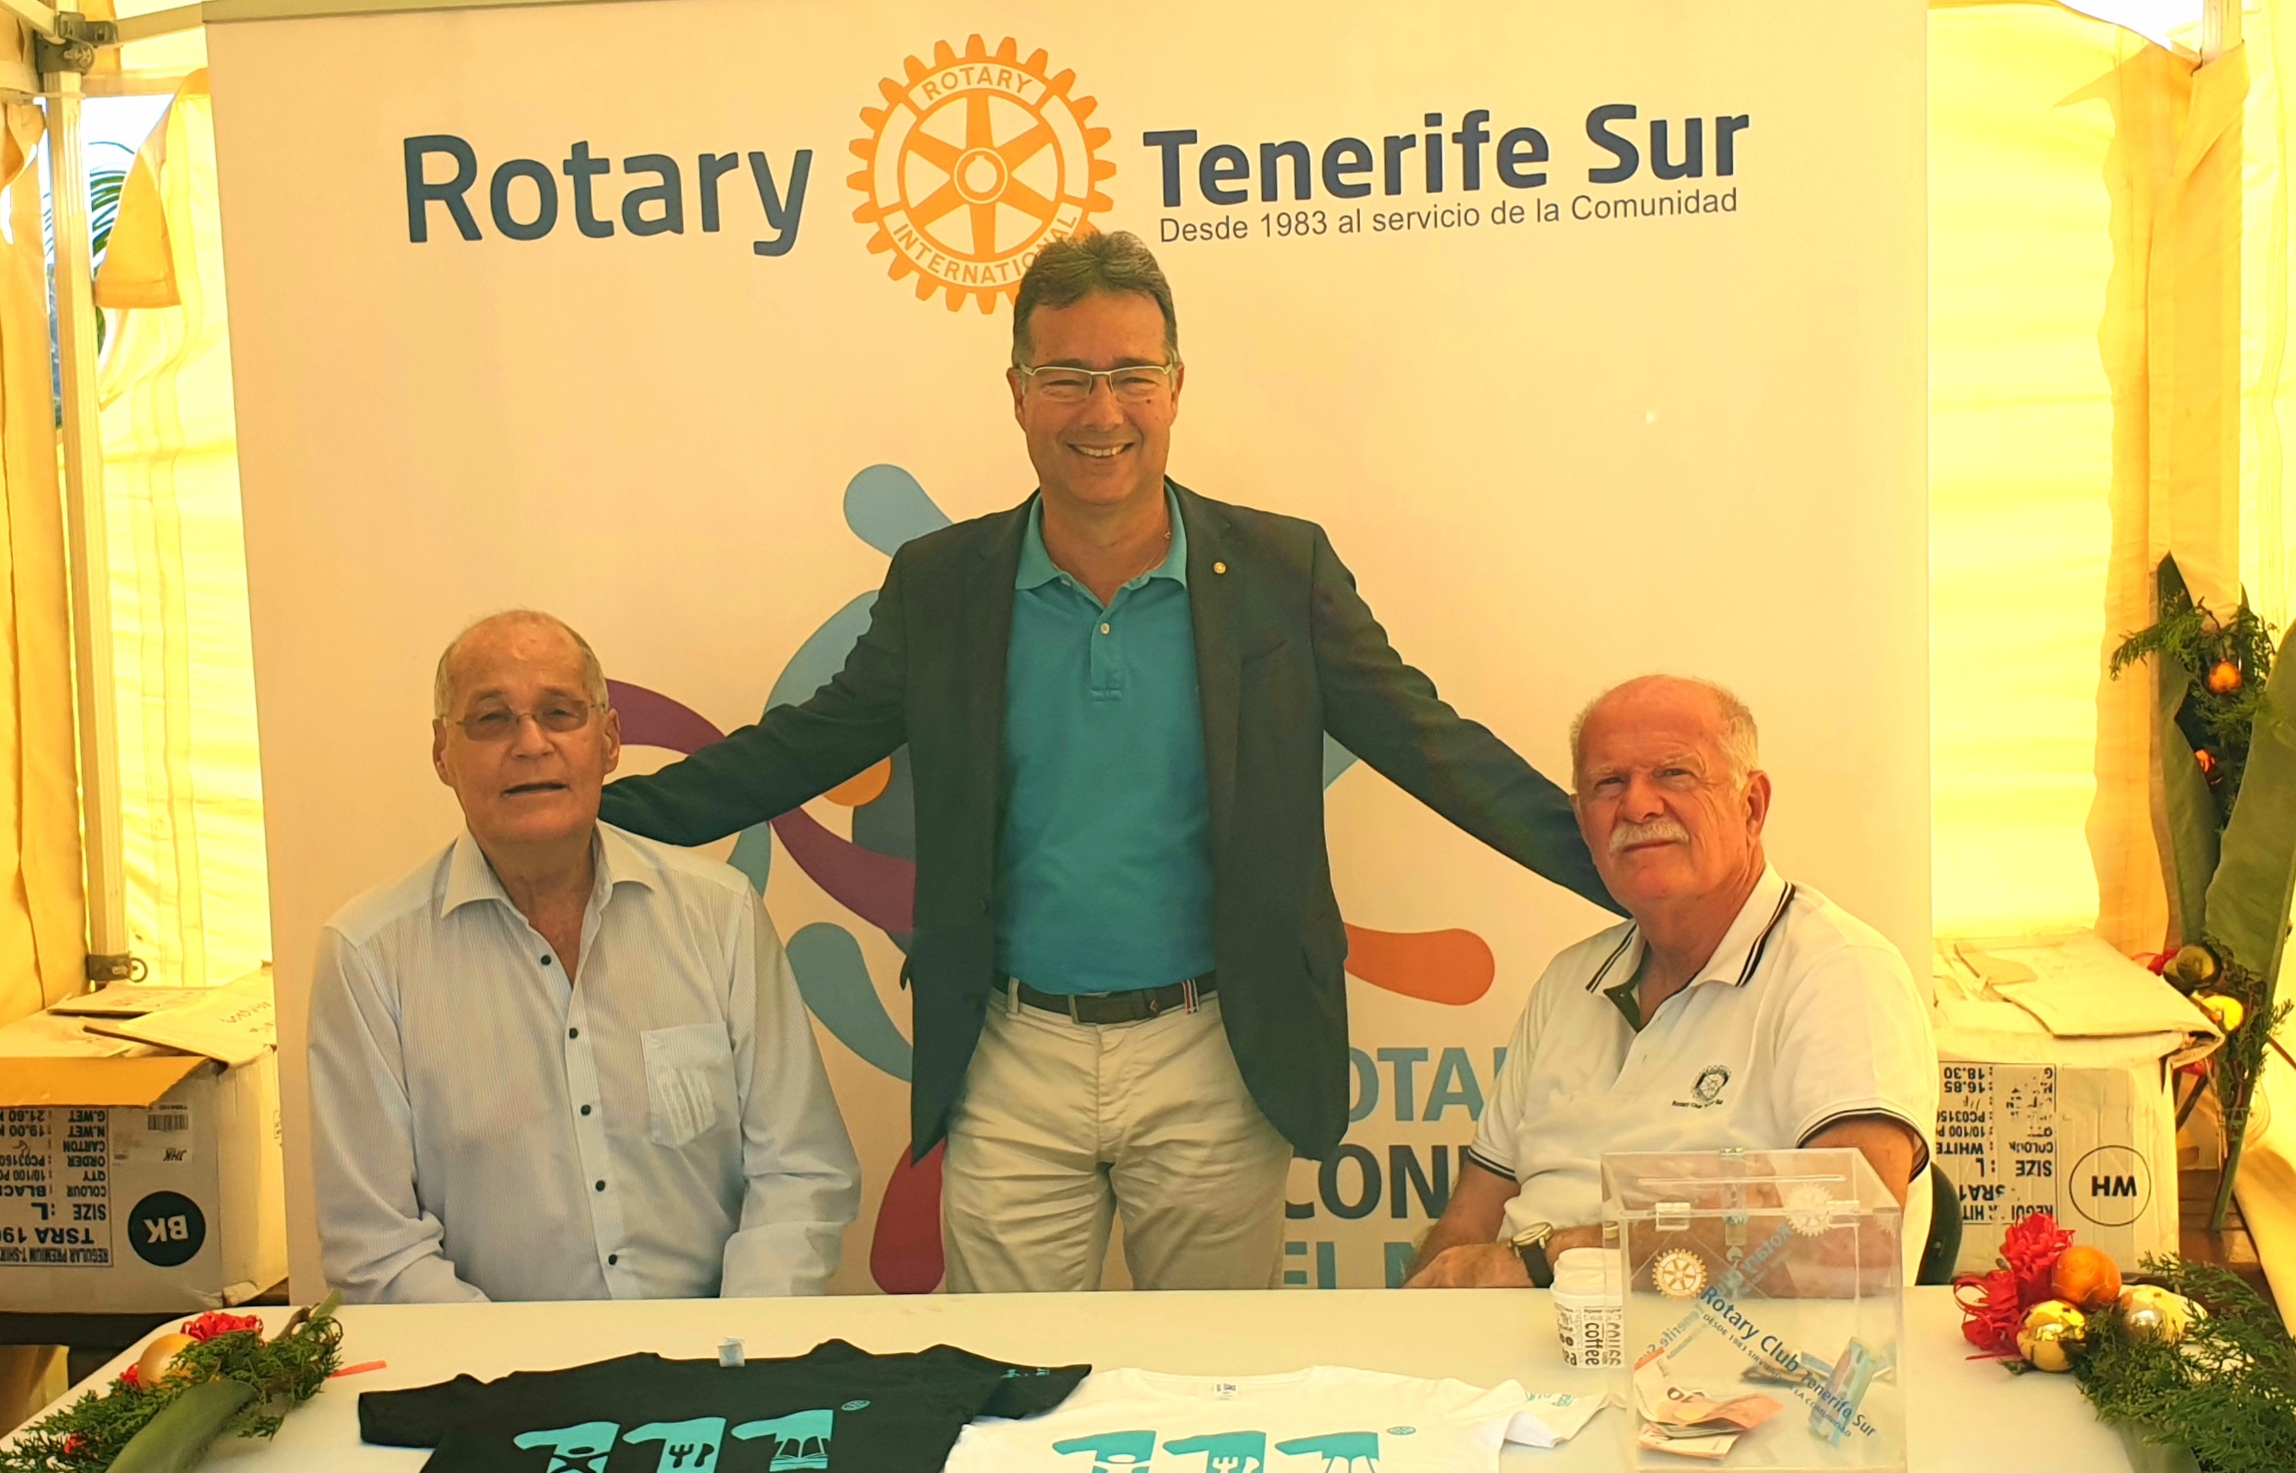 Rotary Club Tenerife Sur participa el la Jornada de Sensibilización Medioambiental SENSITUR en Los Cristianos